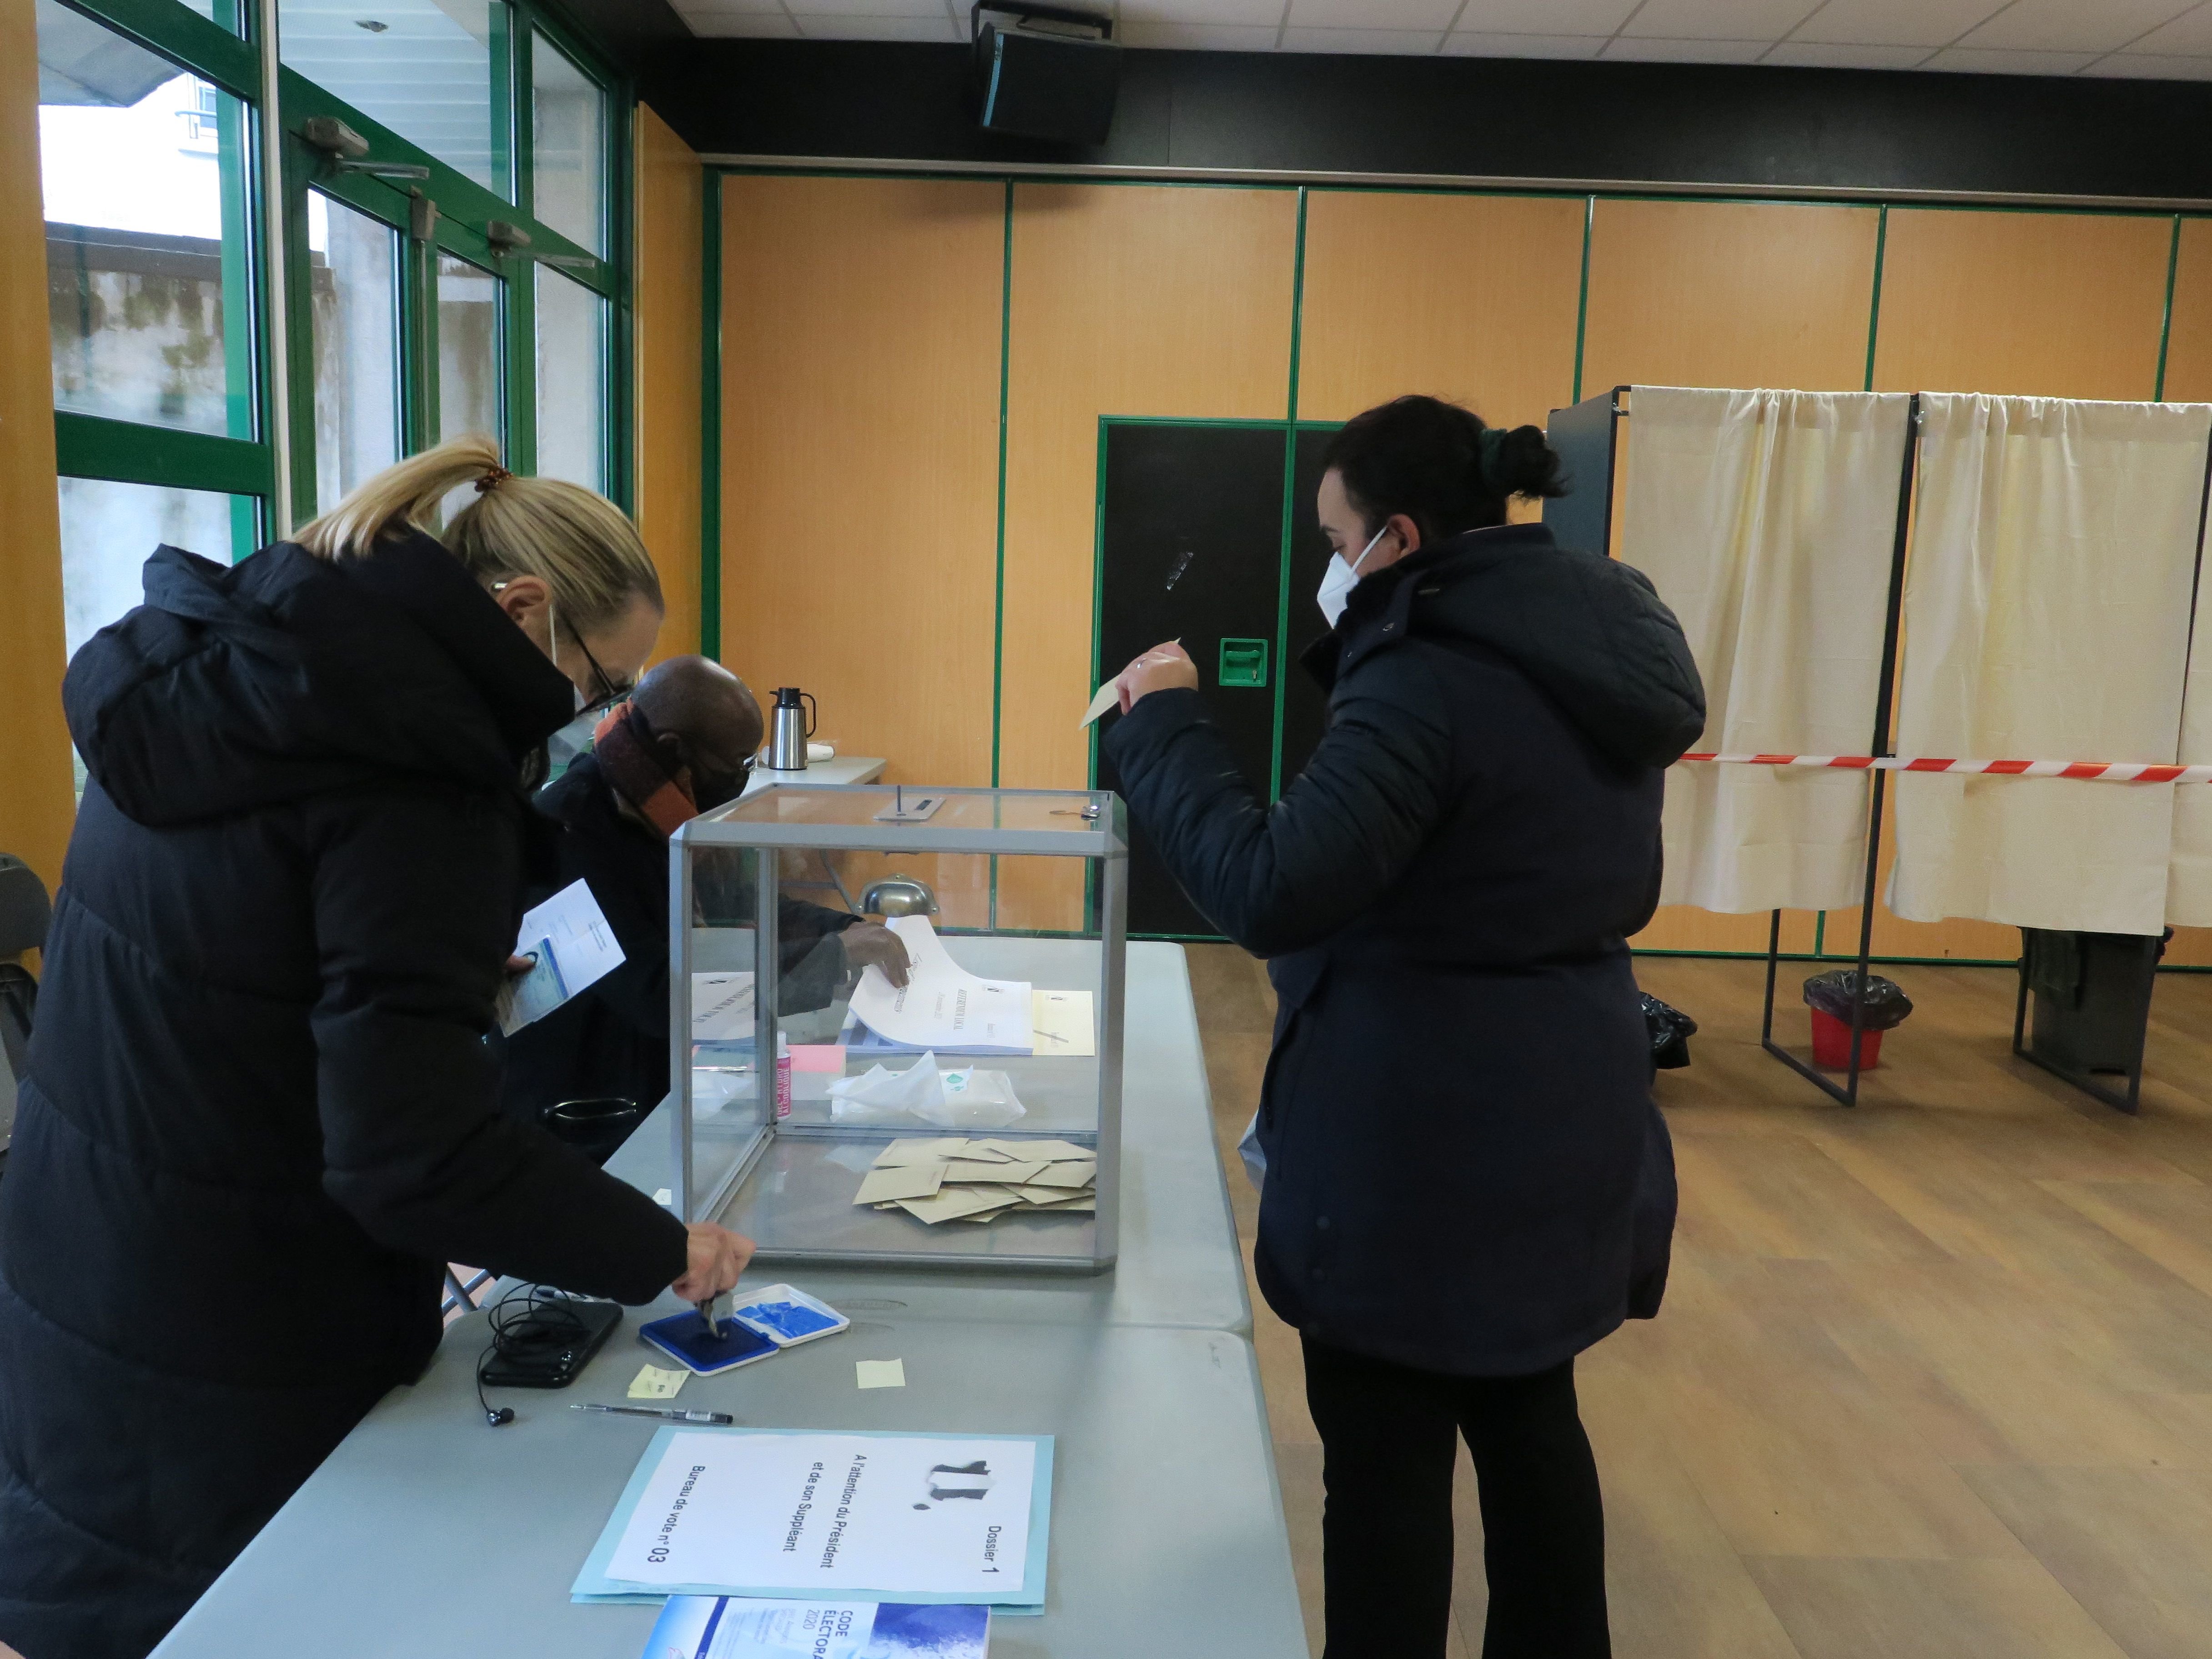 Kremlin-Bicêtre, le 28 novembre. Seuls 6,54% des inscrits ont pris part au référendum sur le marché. LP/Octave Odola